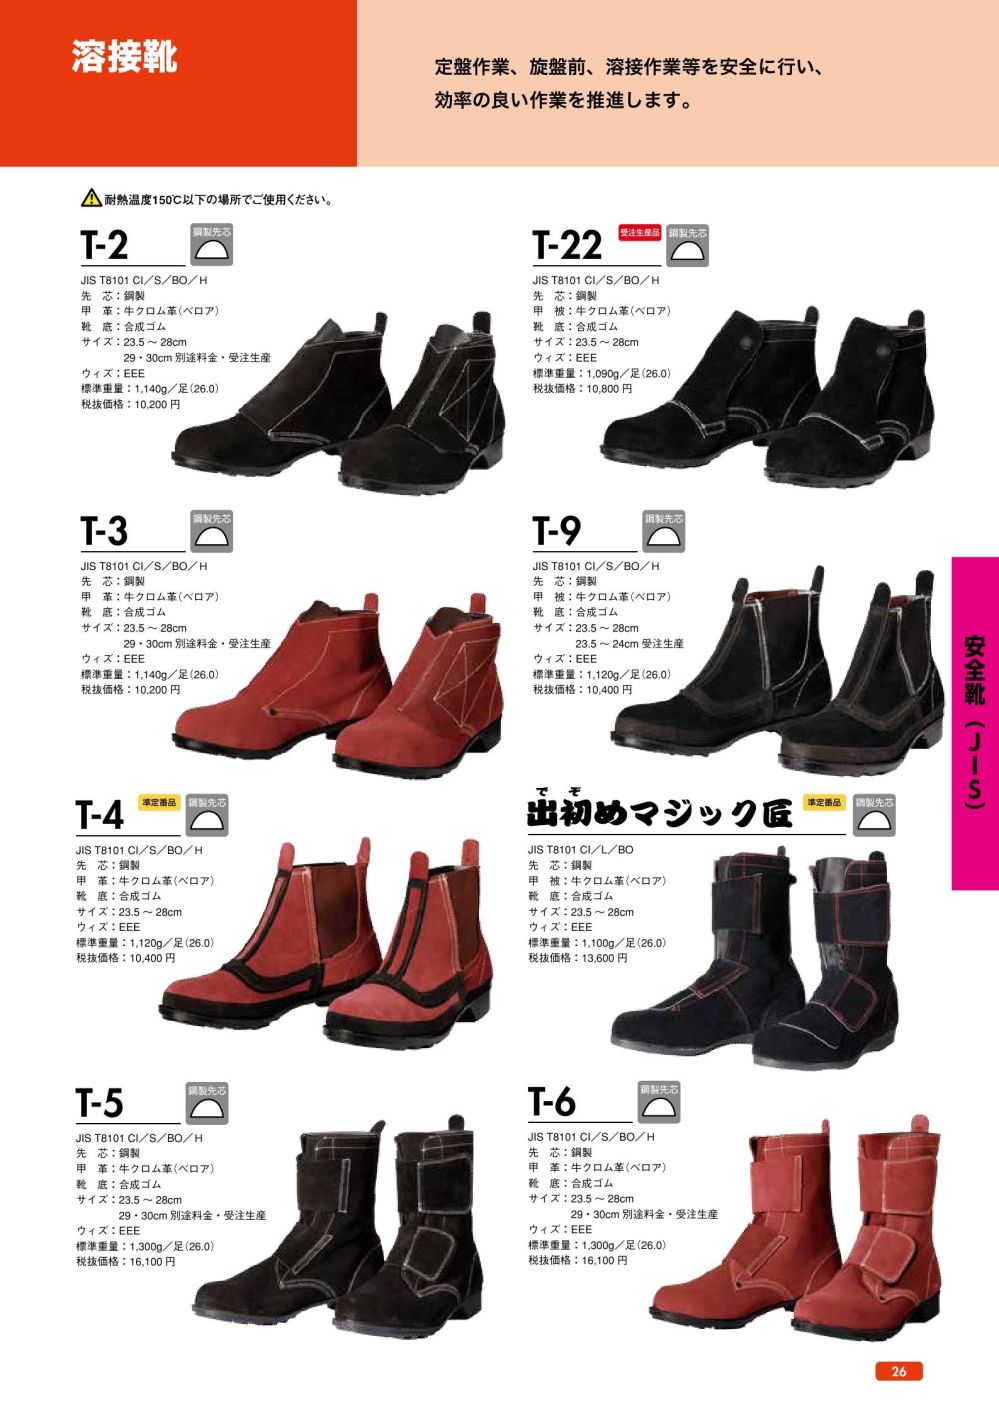 日本正規代理店品 ドンケル 耐熱安全靴 T-6 26.5 EEE DONKEL